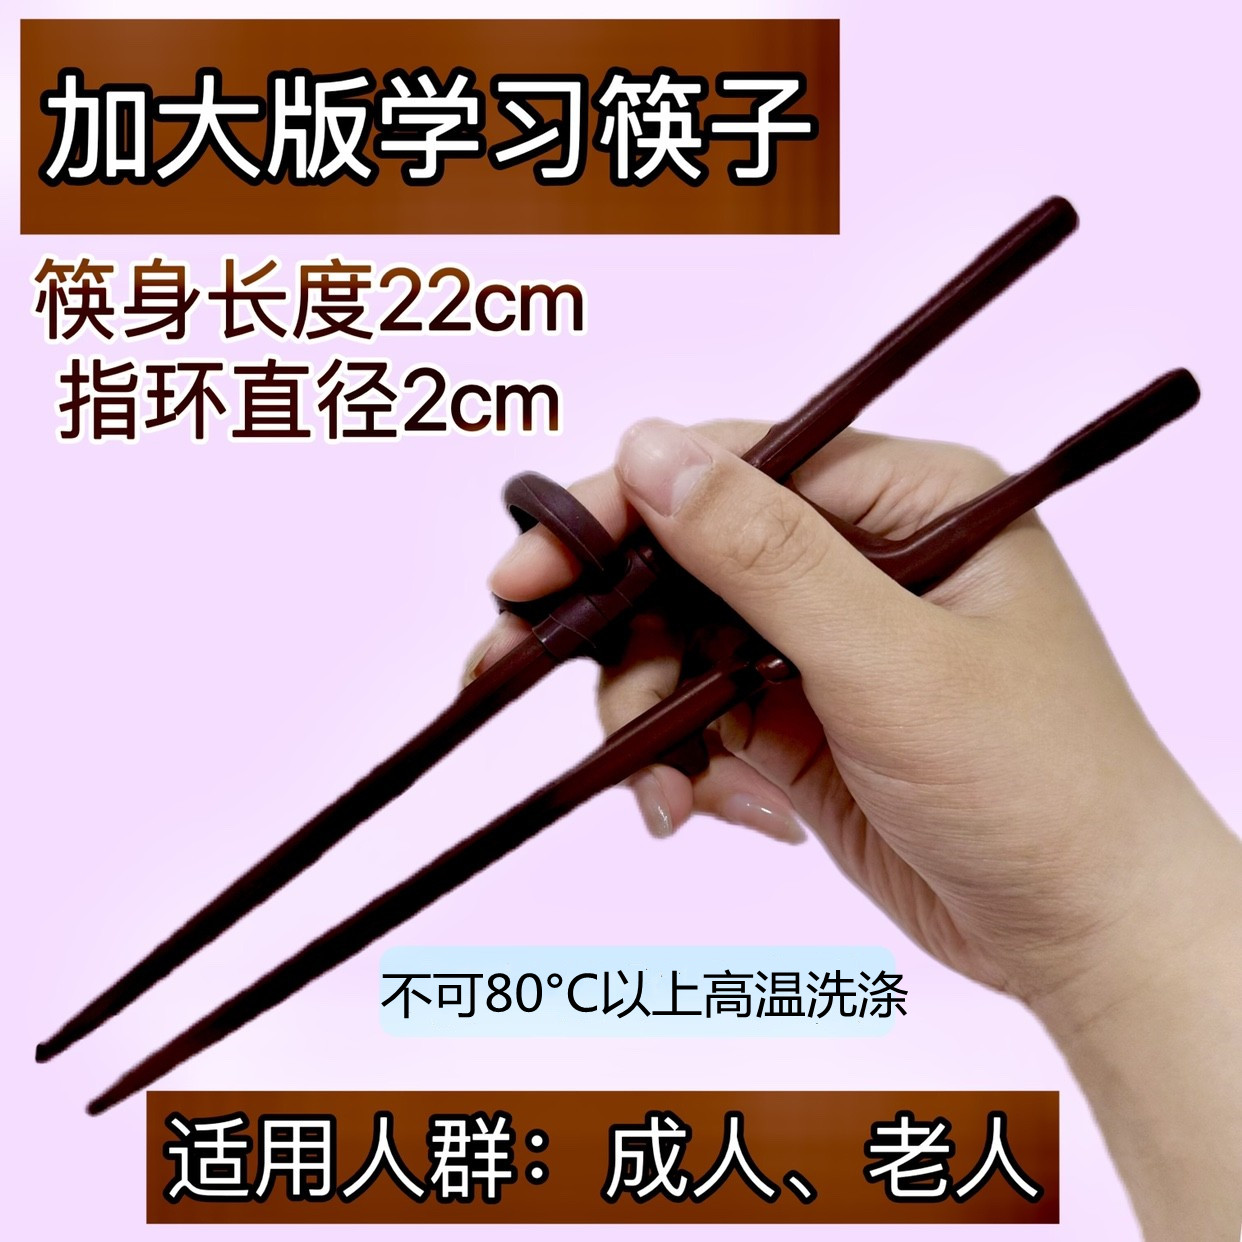 加大款老人大号练习筷子儿童训练大童纠正成人学习矫正筷子外国人